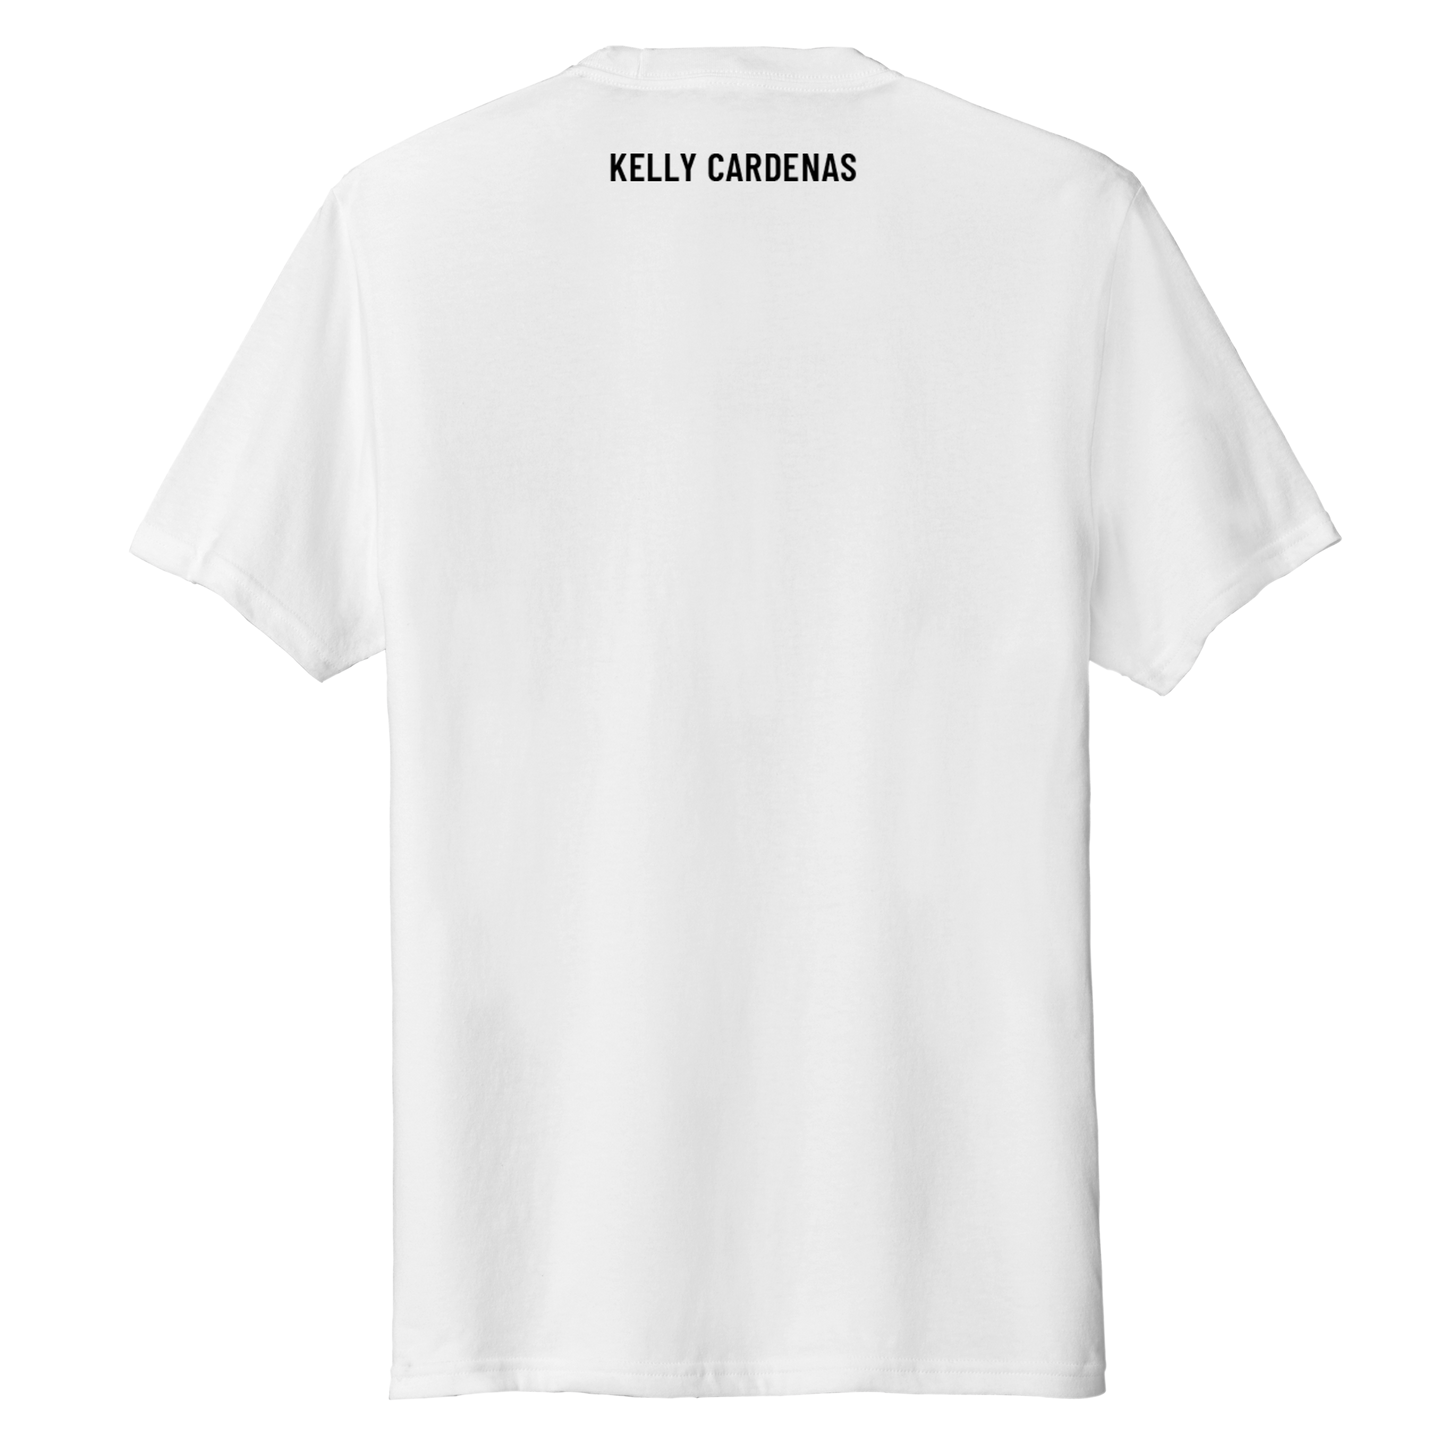 Kelly Cardenas Small Logo T-Shirt